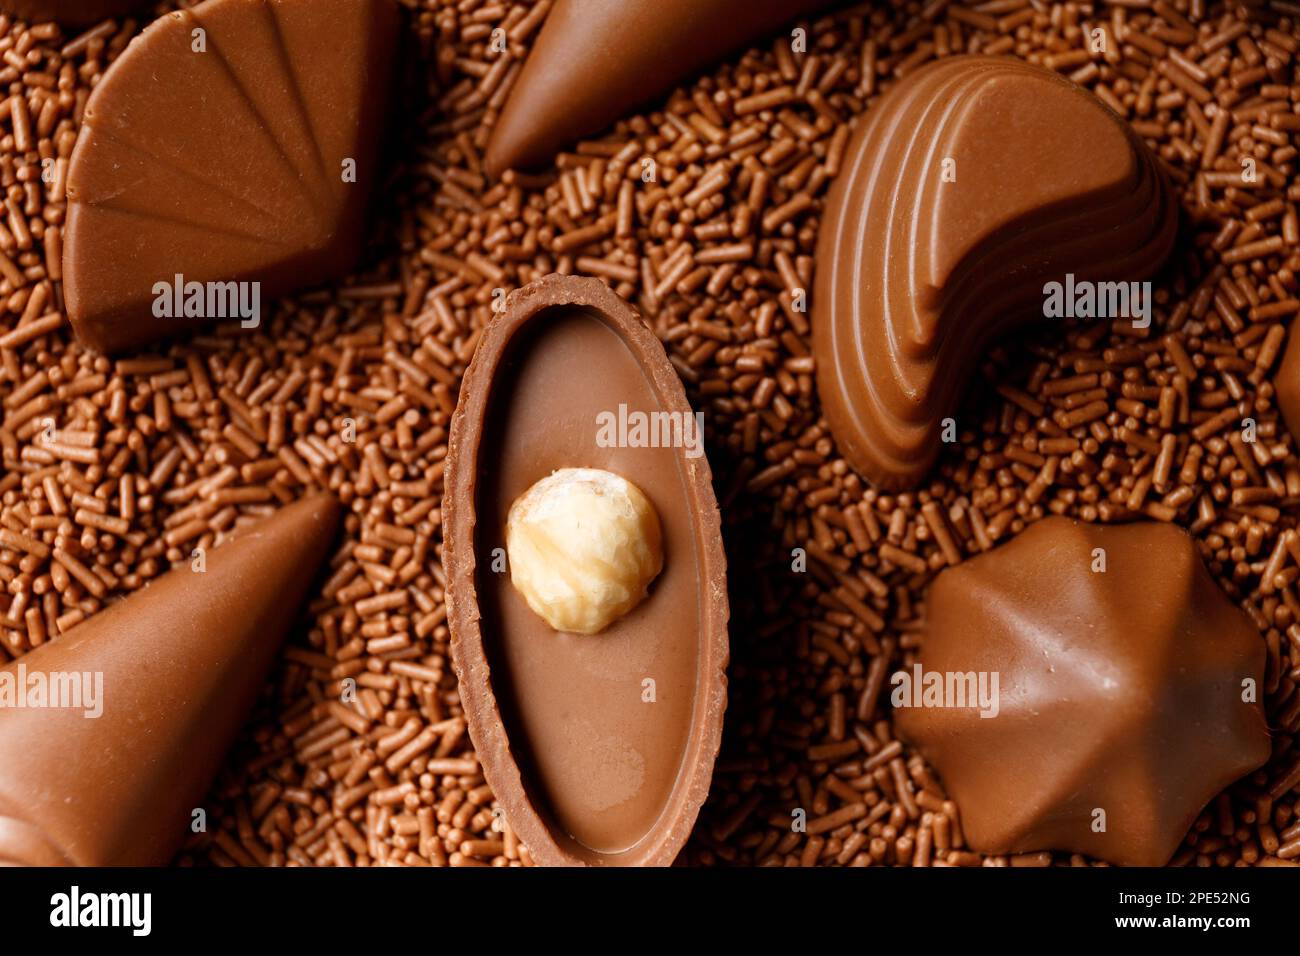 Dulces de chocolate negro bellamente formados sumergidos en chips de chocolate de cerca, concepto de fabricación de dulces de chocolate, fondo de chocolate. Foto de stock